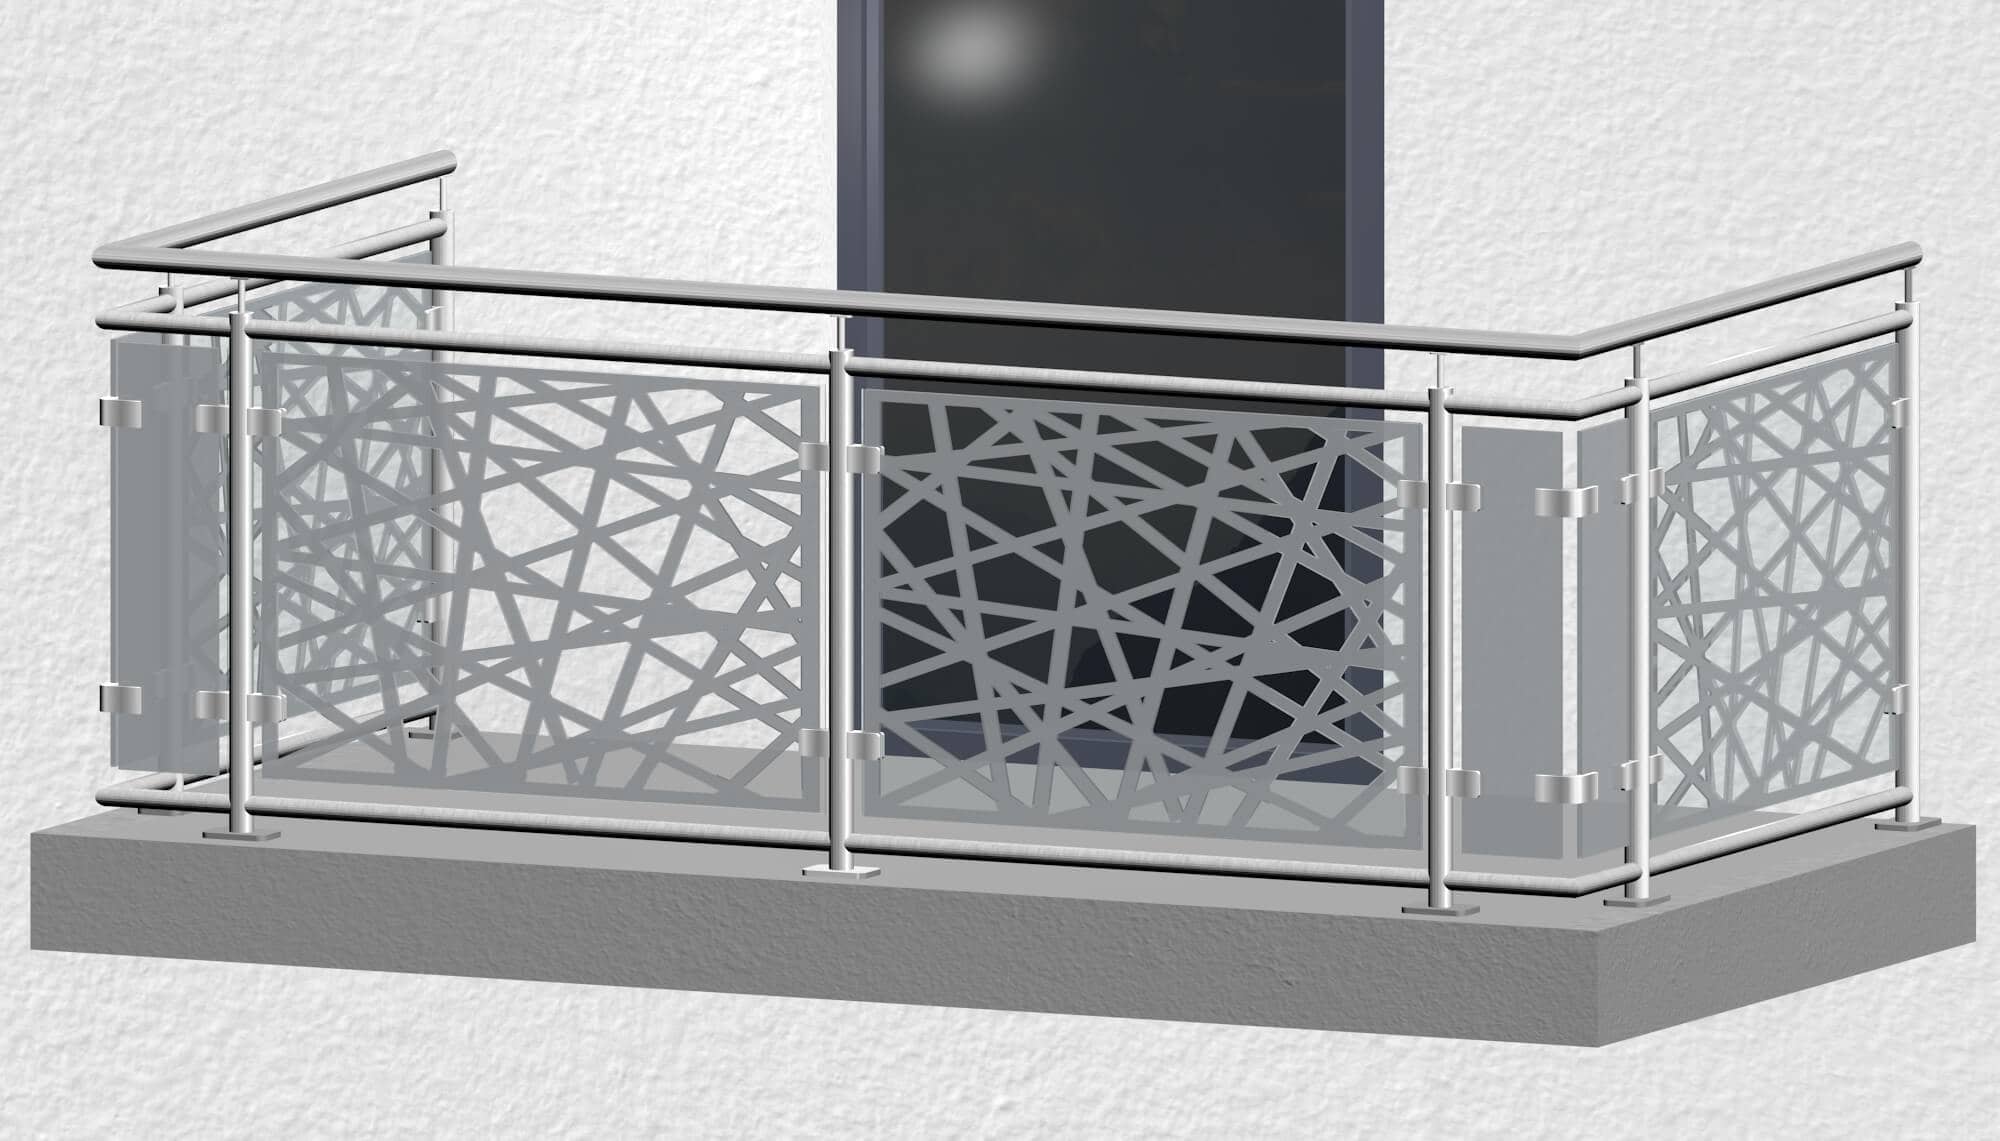 Balkonhek roestvrij staal ontwerp glas AB 1